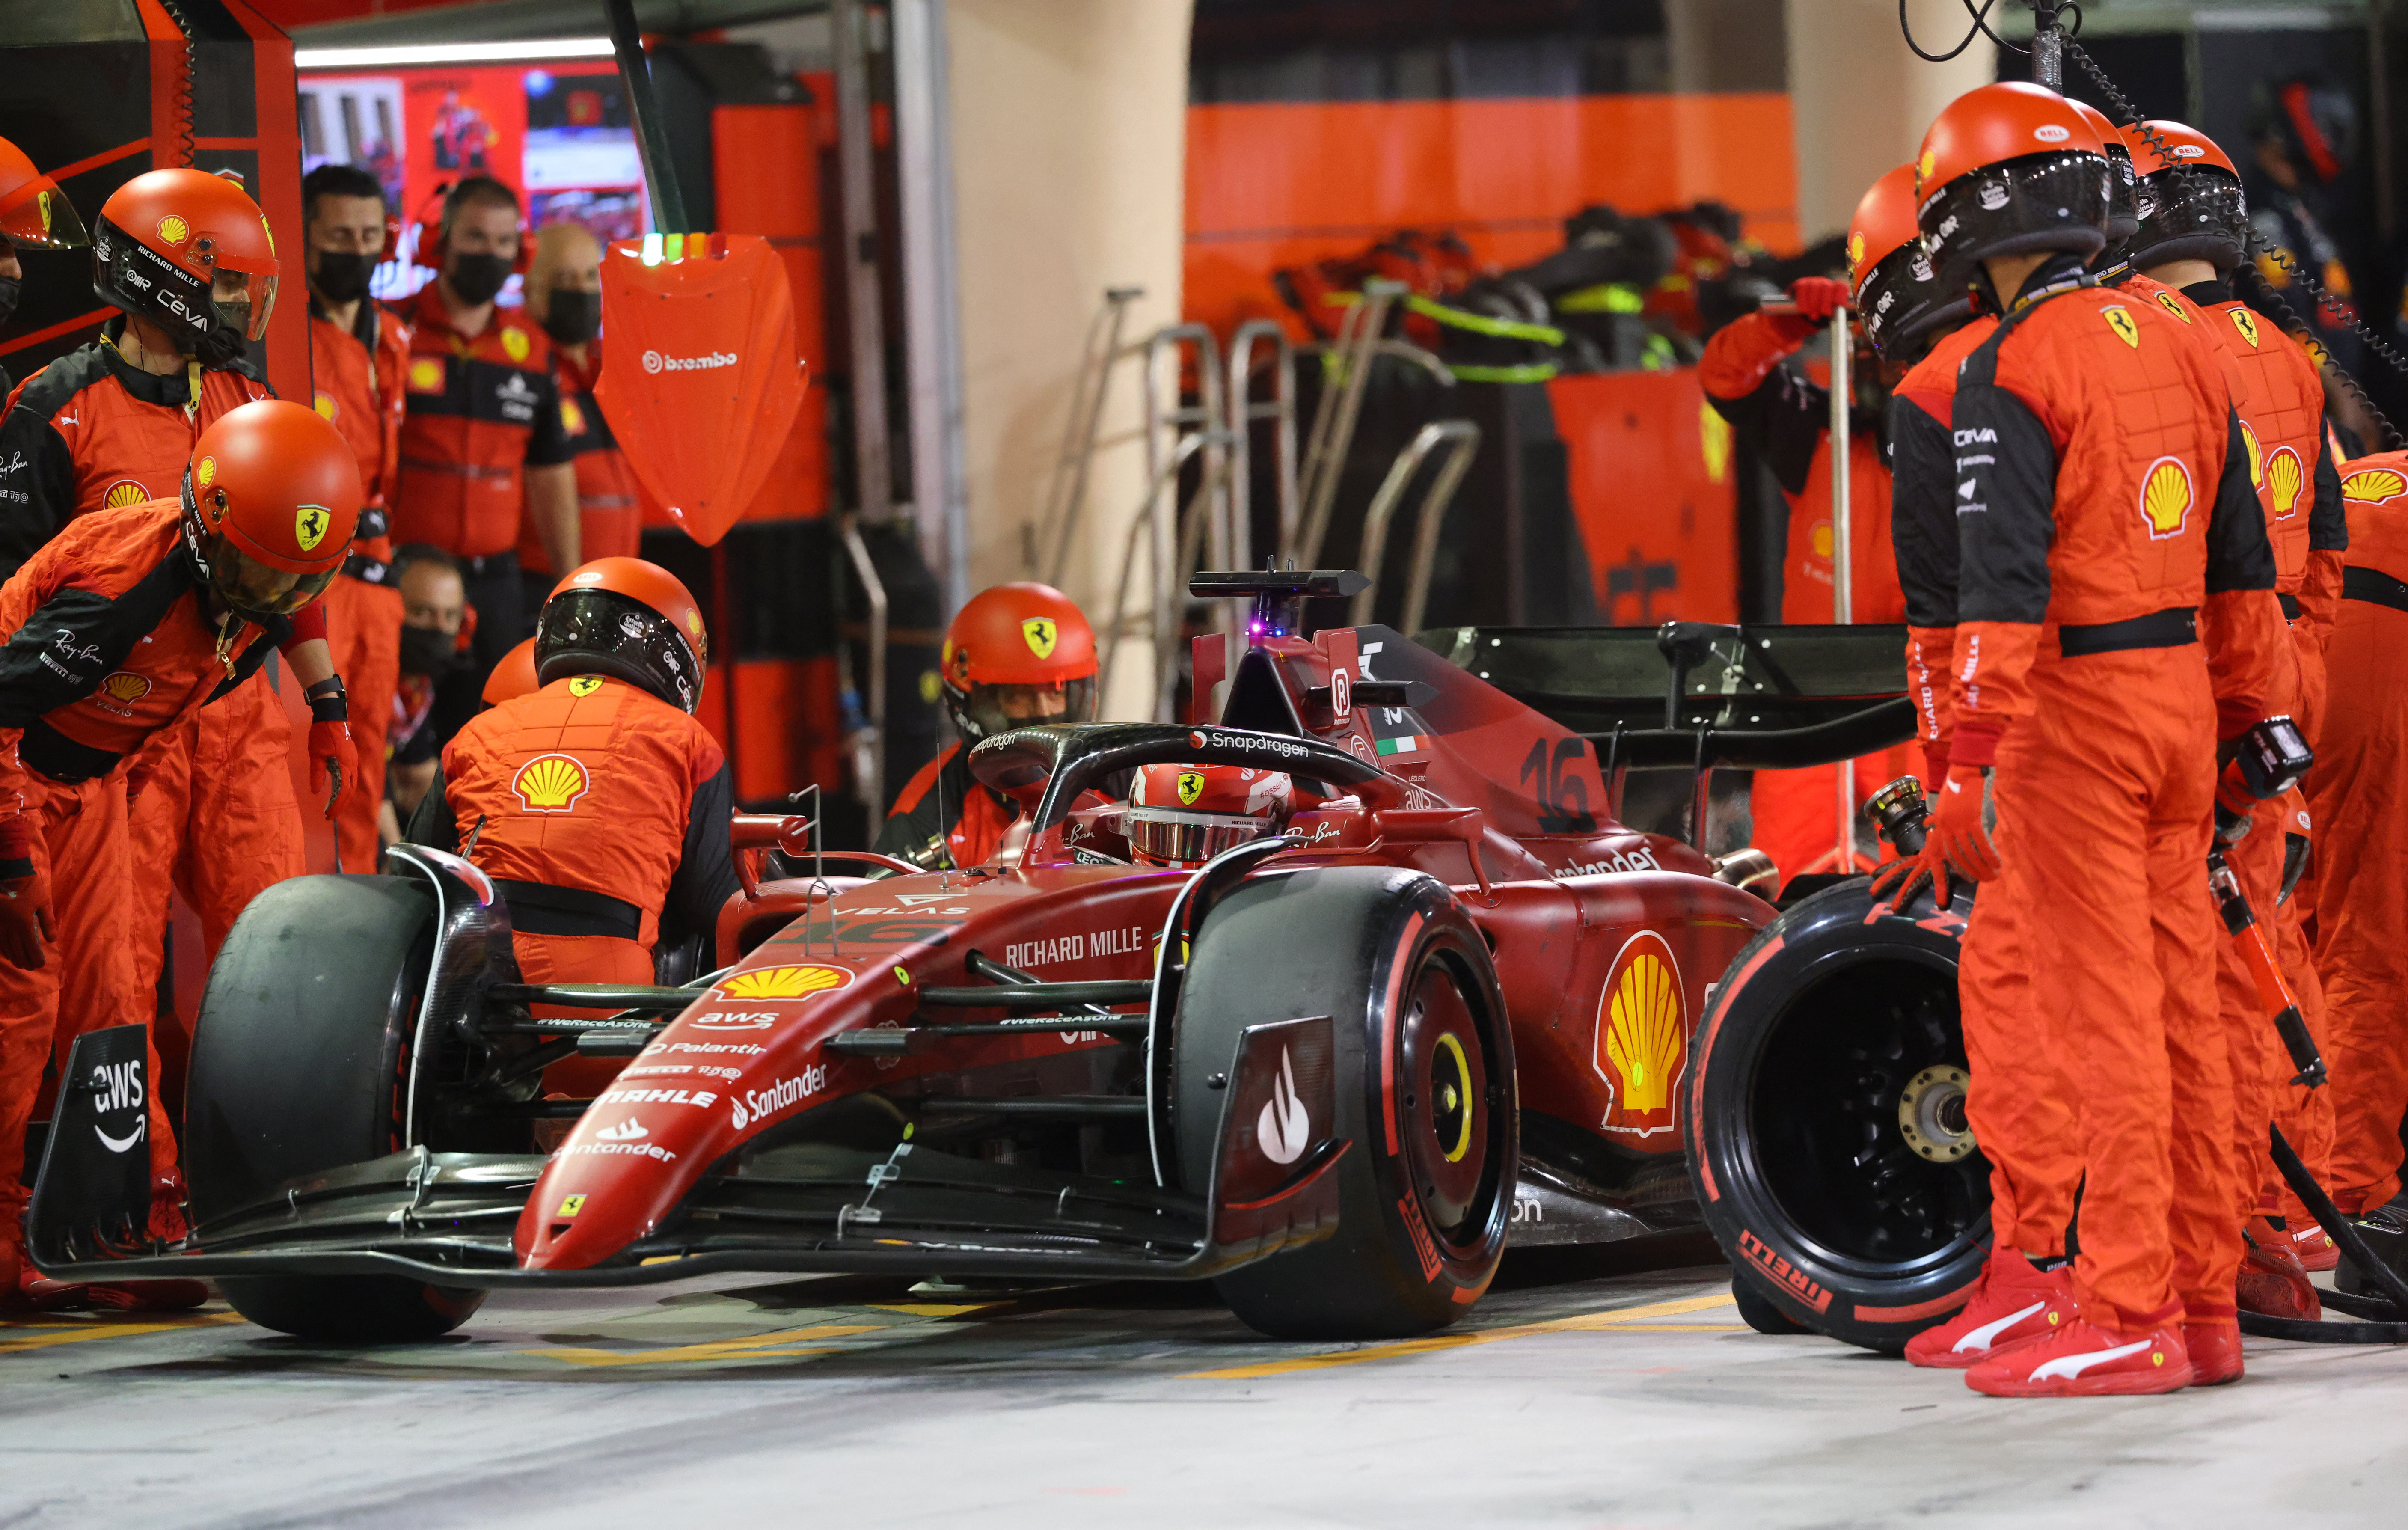 Los trabajos de los mecánicos de Ferrari fueron impecables en las detenciones en los boxes (REUTERS/Giuseppe Cacace)